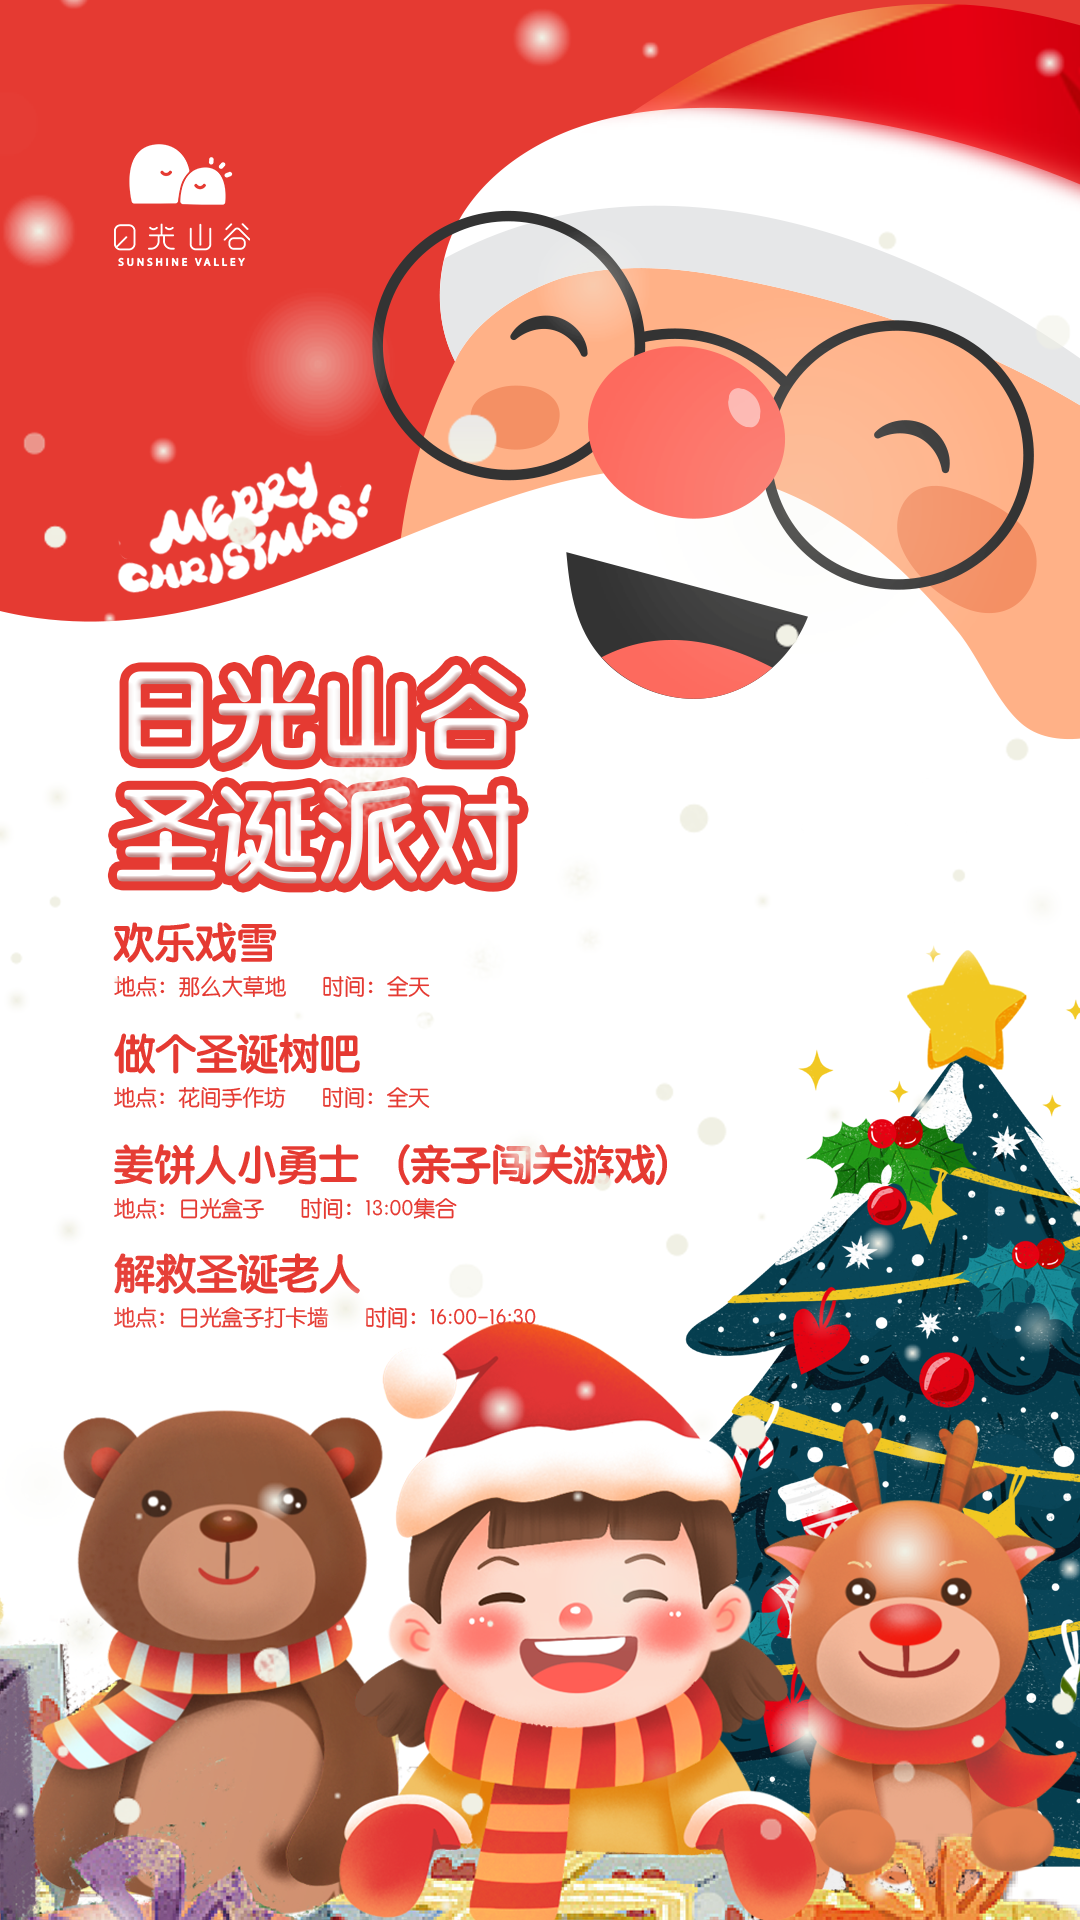 北京日光山谷圣诞节游玩攻略（门票+地址+活动详情）信息一览